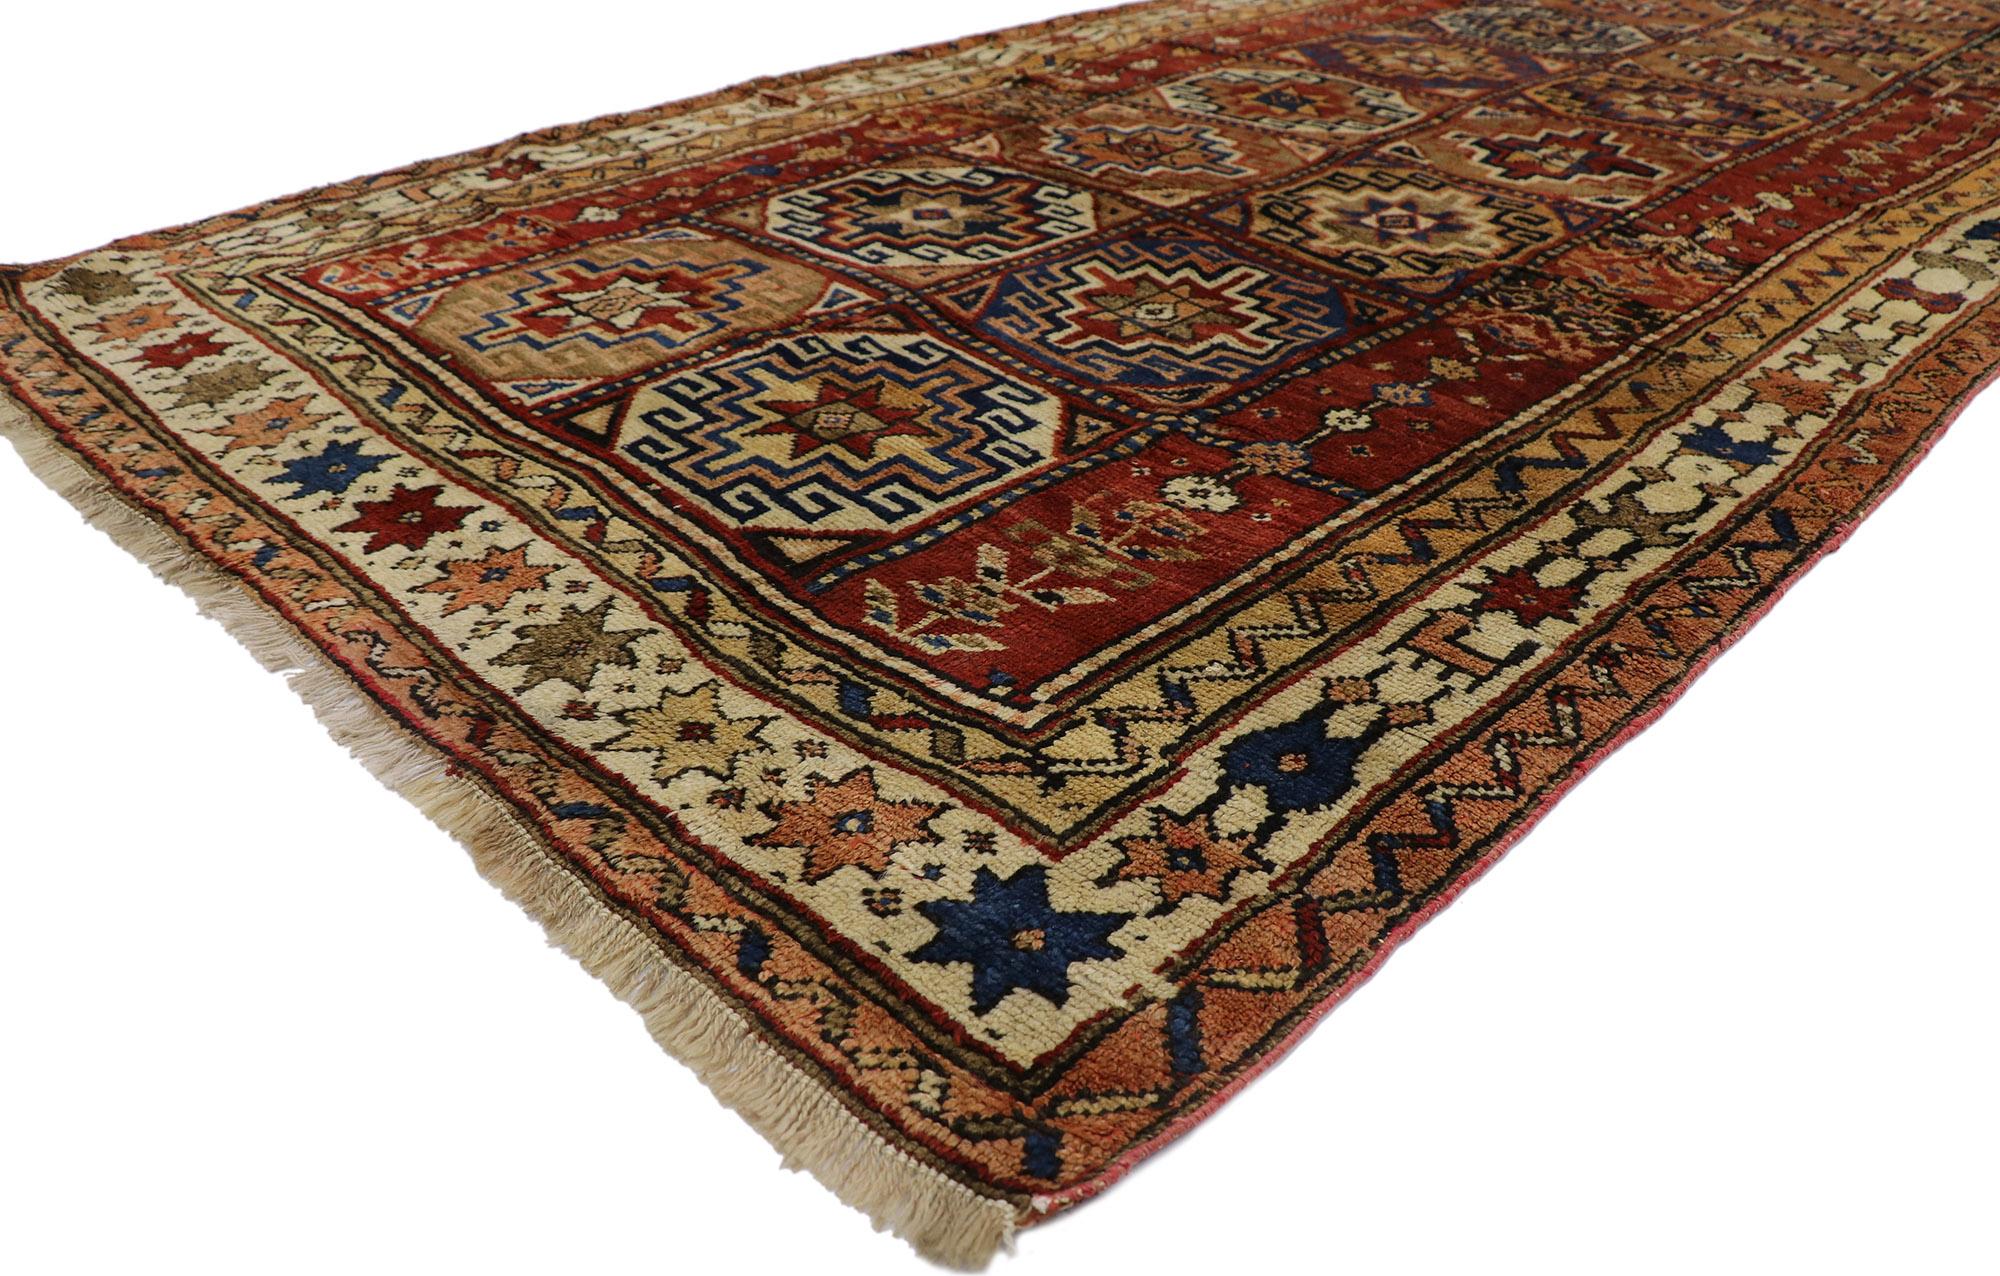 60927 Antiker Karabagh Aserbaidschan Galerie-Teppich mit Memling Guls 05'03 x 11'00. Dieser handgeknüpfte, antike Teppich aus Karabagh Aserbaidschan versprüht nomadischen Charme mit einem Hauch von Raffinesse und wirkt einladend. Das abgewetzte Feld